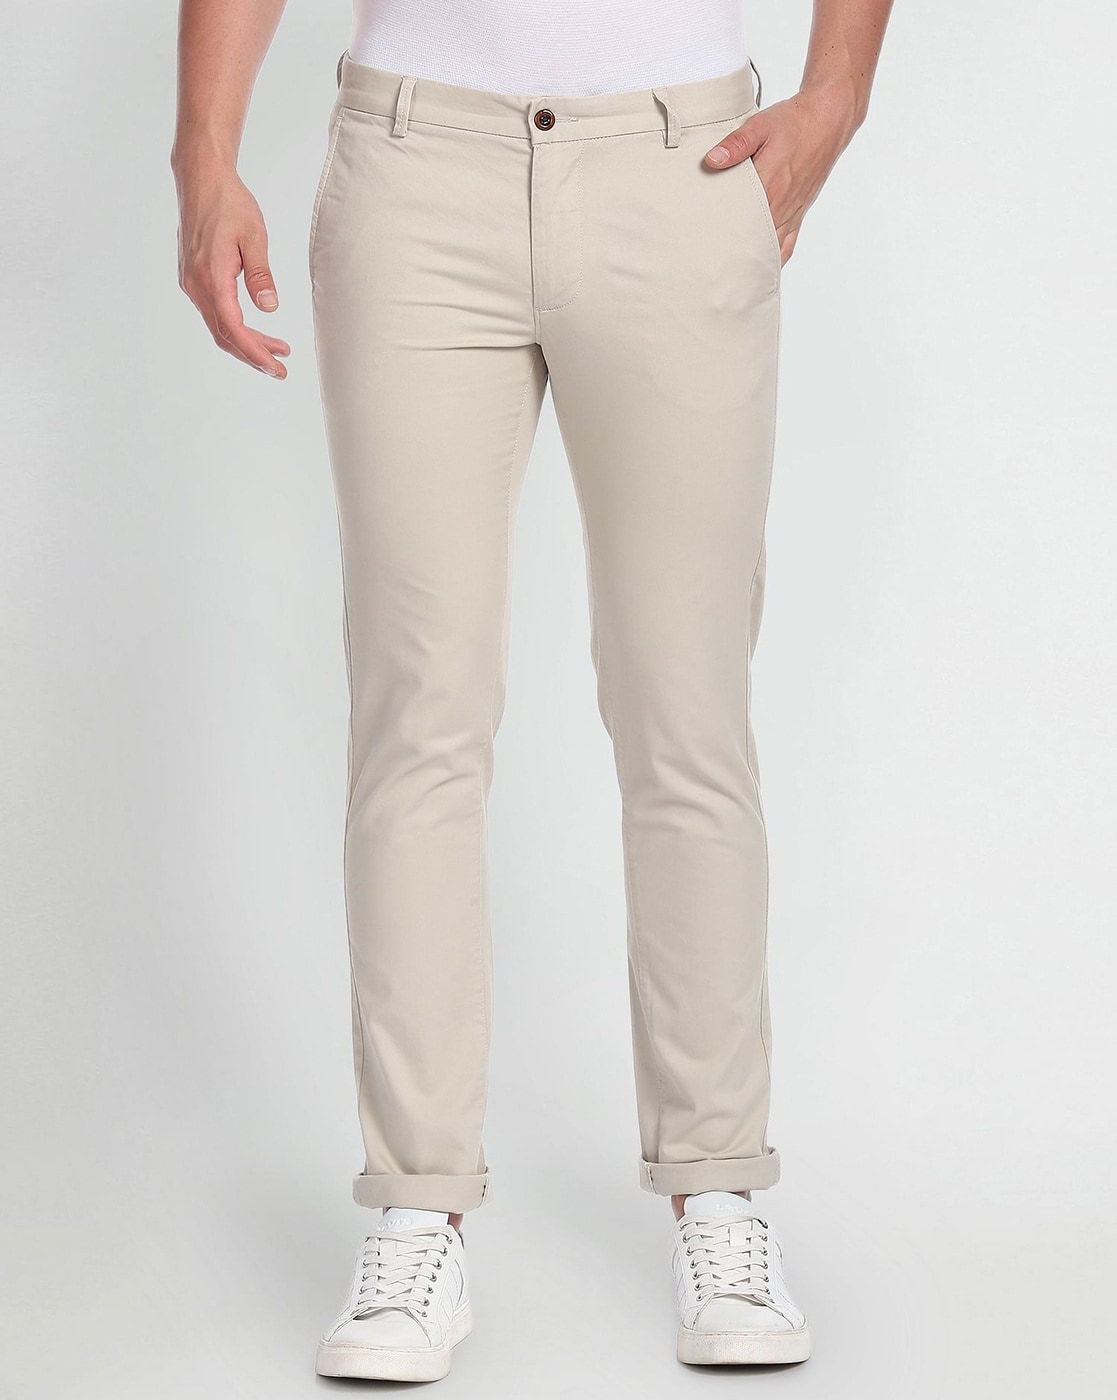 Buy Beige Trousers  Pants for Men by Arrow Sports Online  Ajiocom